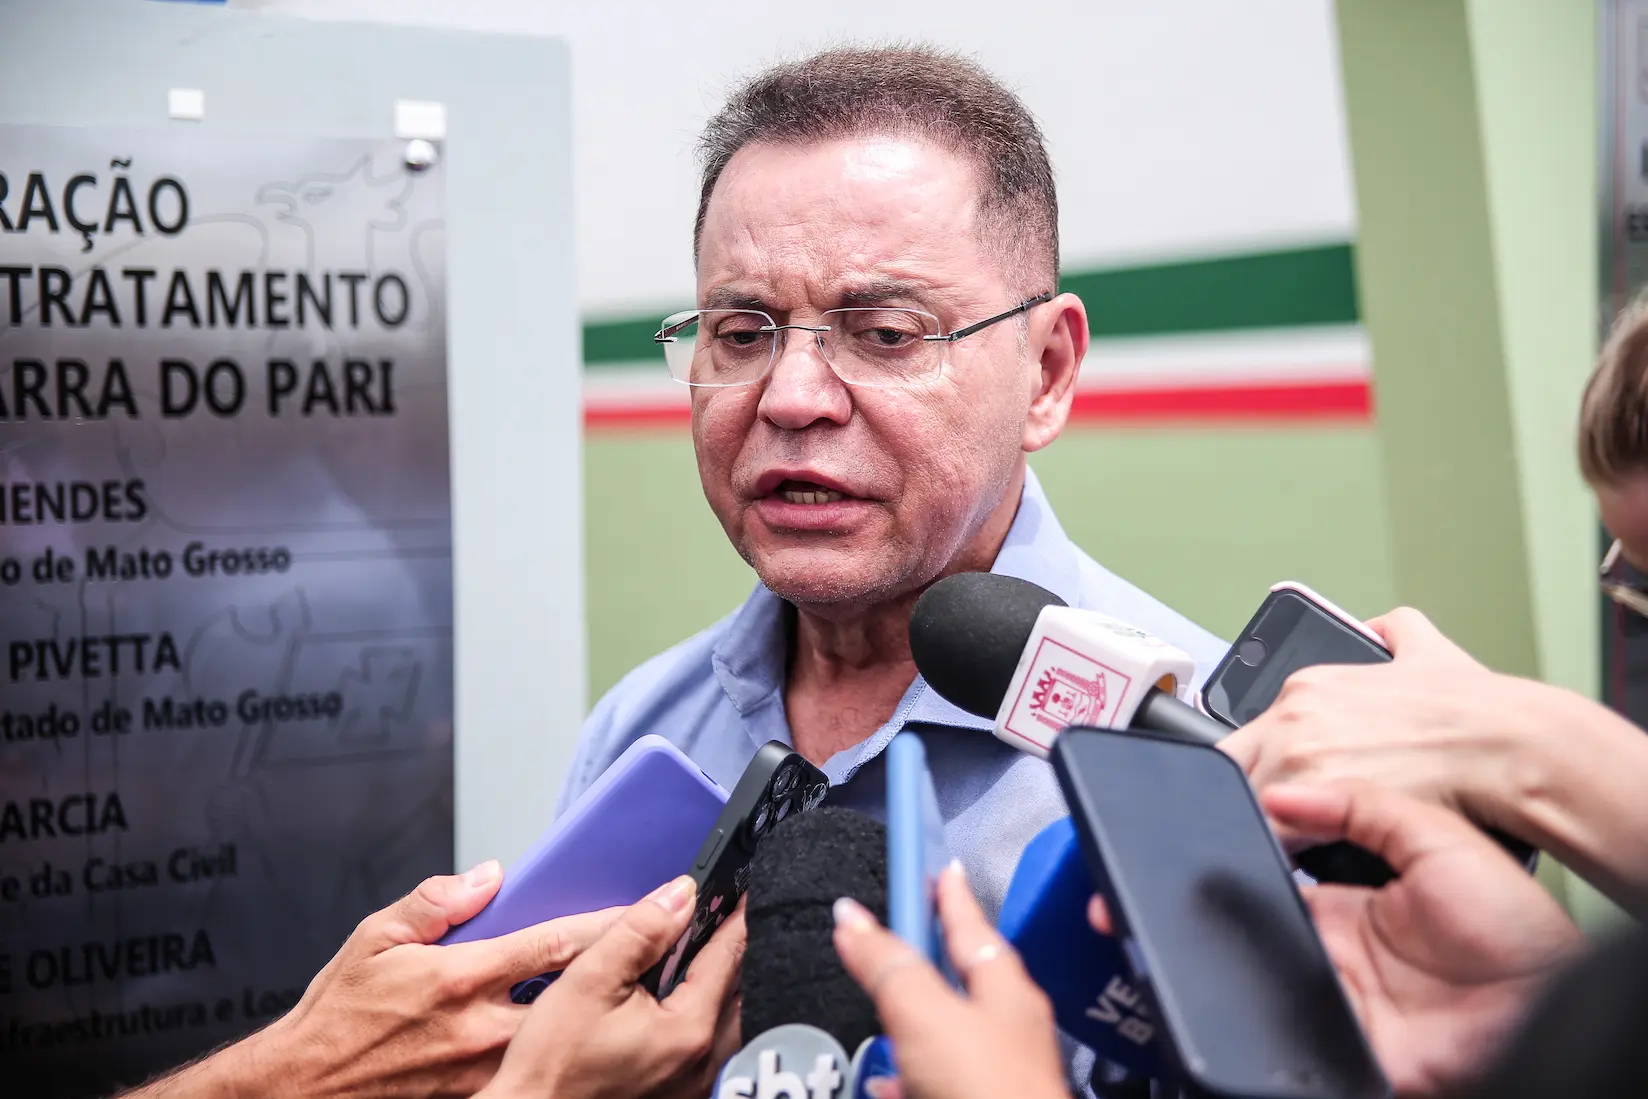 Eduardo Botelho lidera disputa pela Prefeitura de Cuiabá, aponta pesquisa